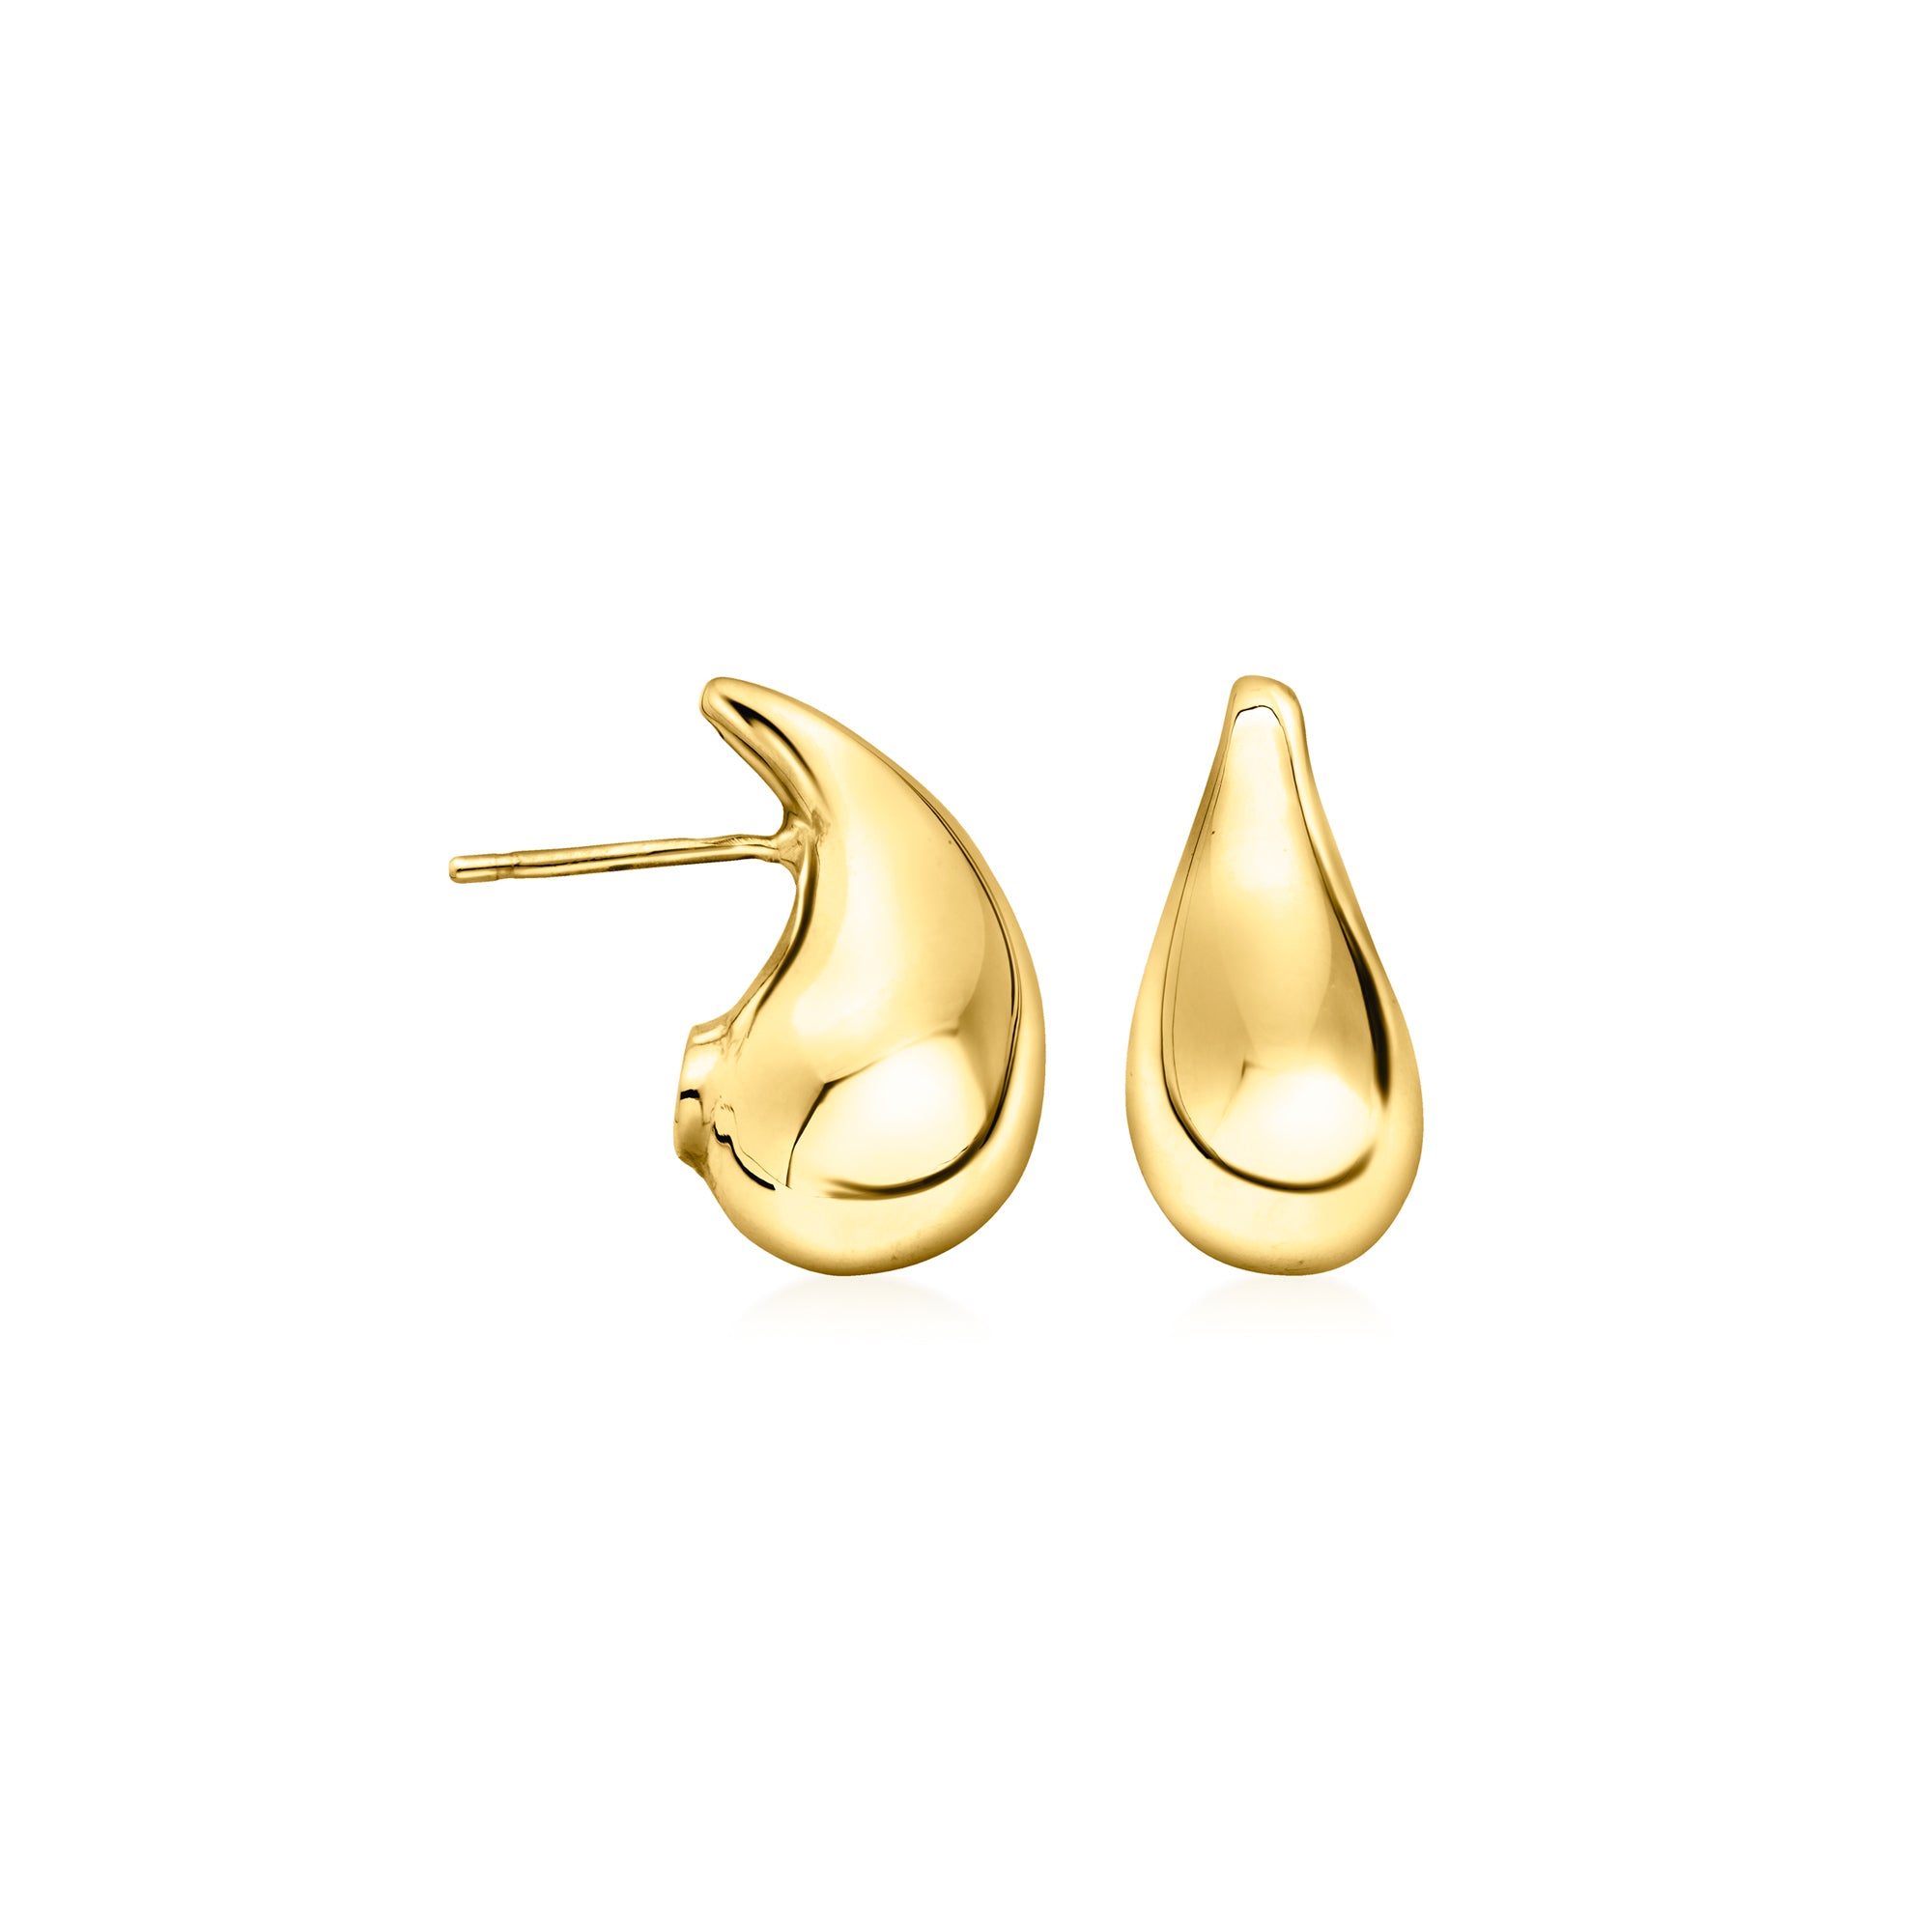 Ross-simons Italian 14kt Yellow Gold Teardrop Earrings In Gray